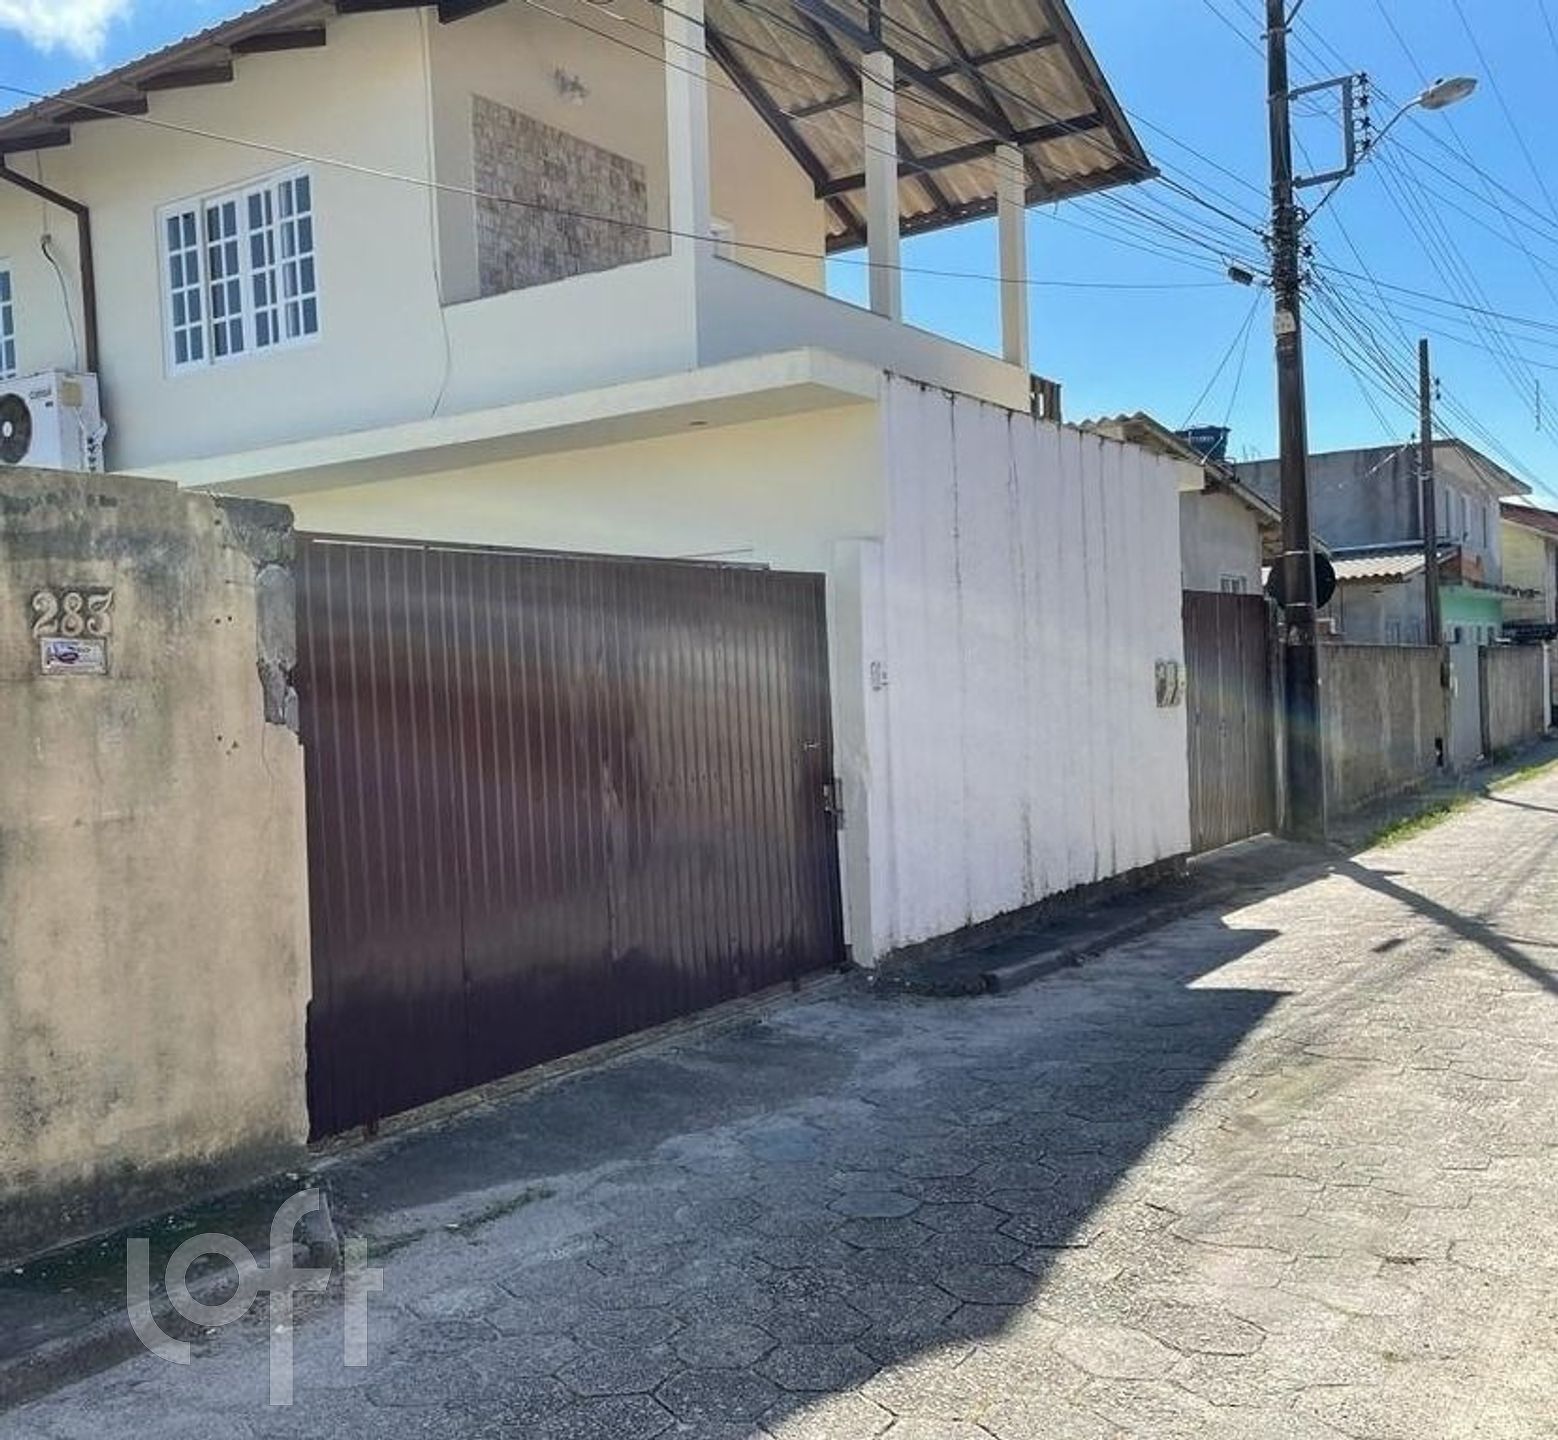 VENDA &#8211; Casa de 4 quartos no bairro Carianos, Florianópolis &#8211; PU9mjm68